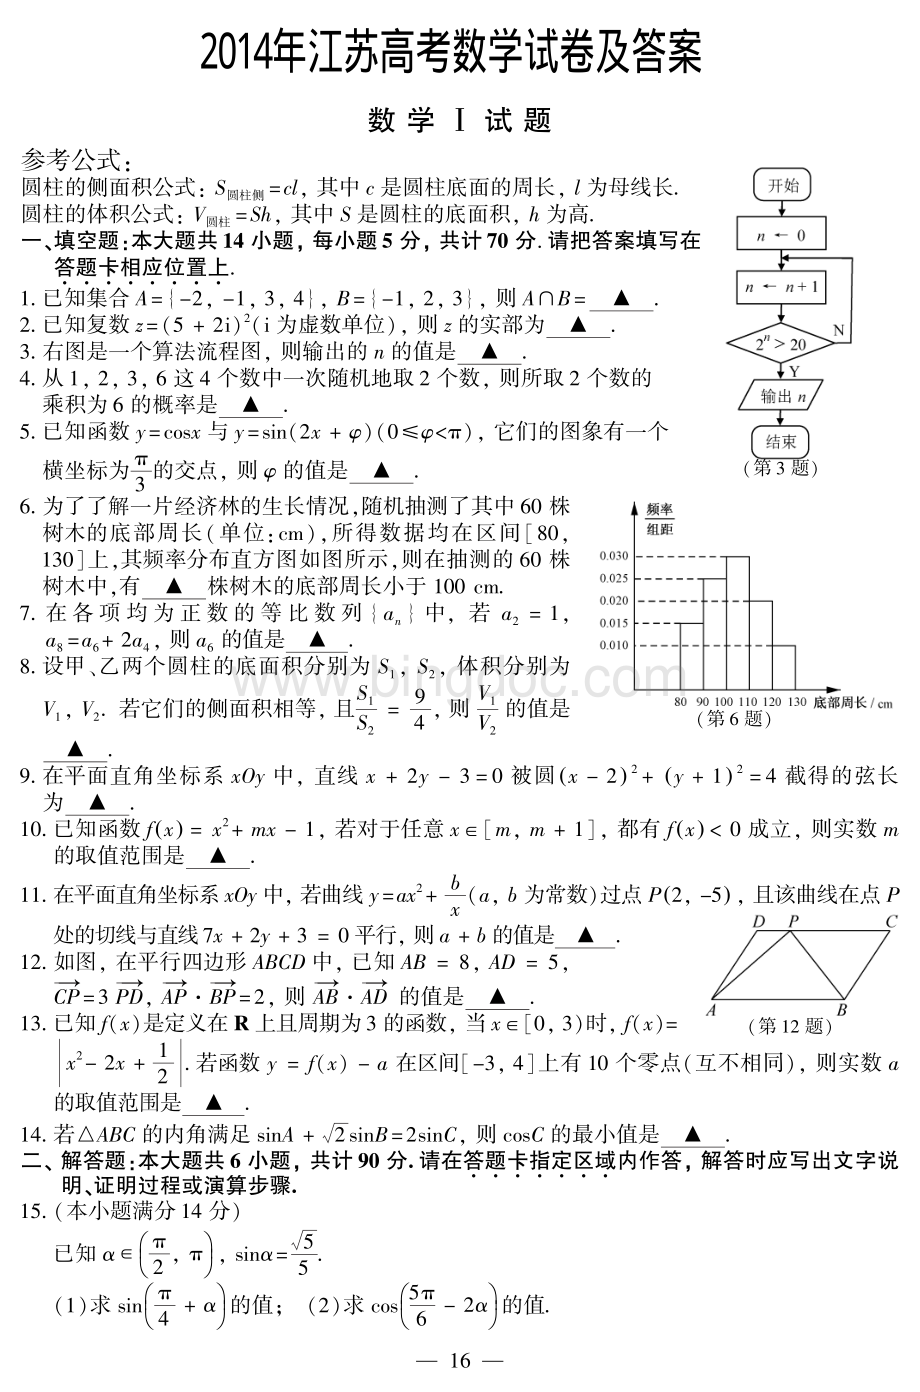 江苏高考数学试卷及答案.pdf